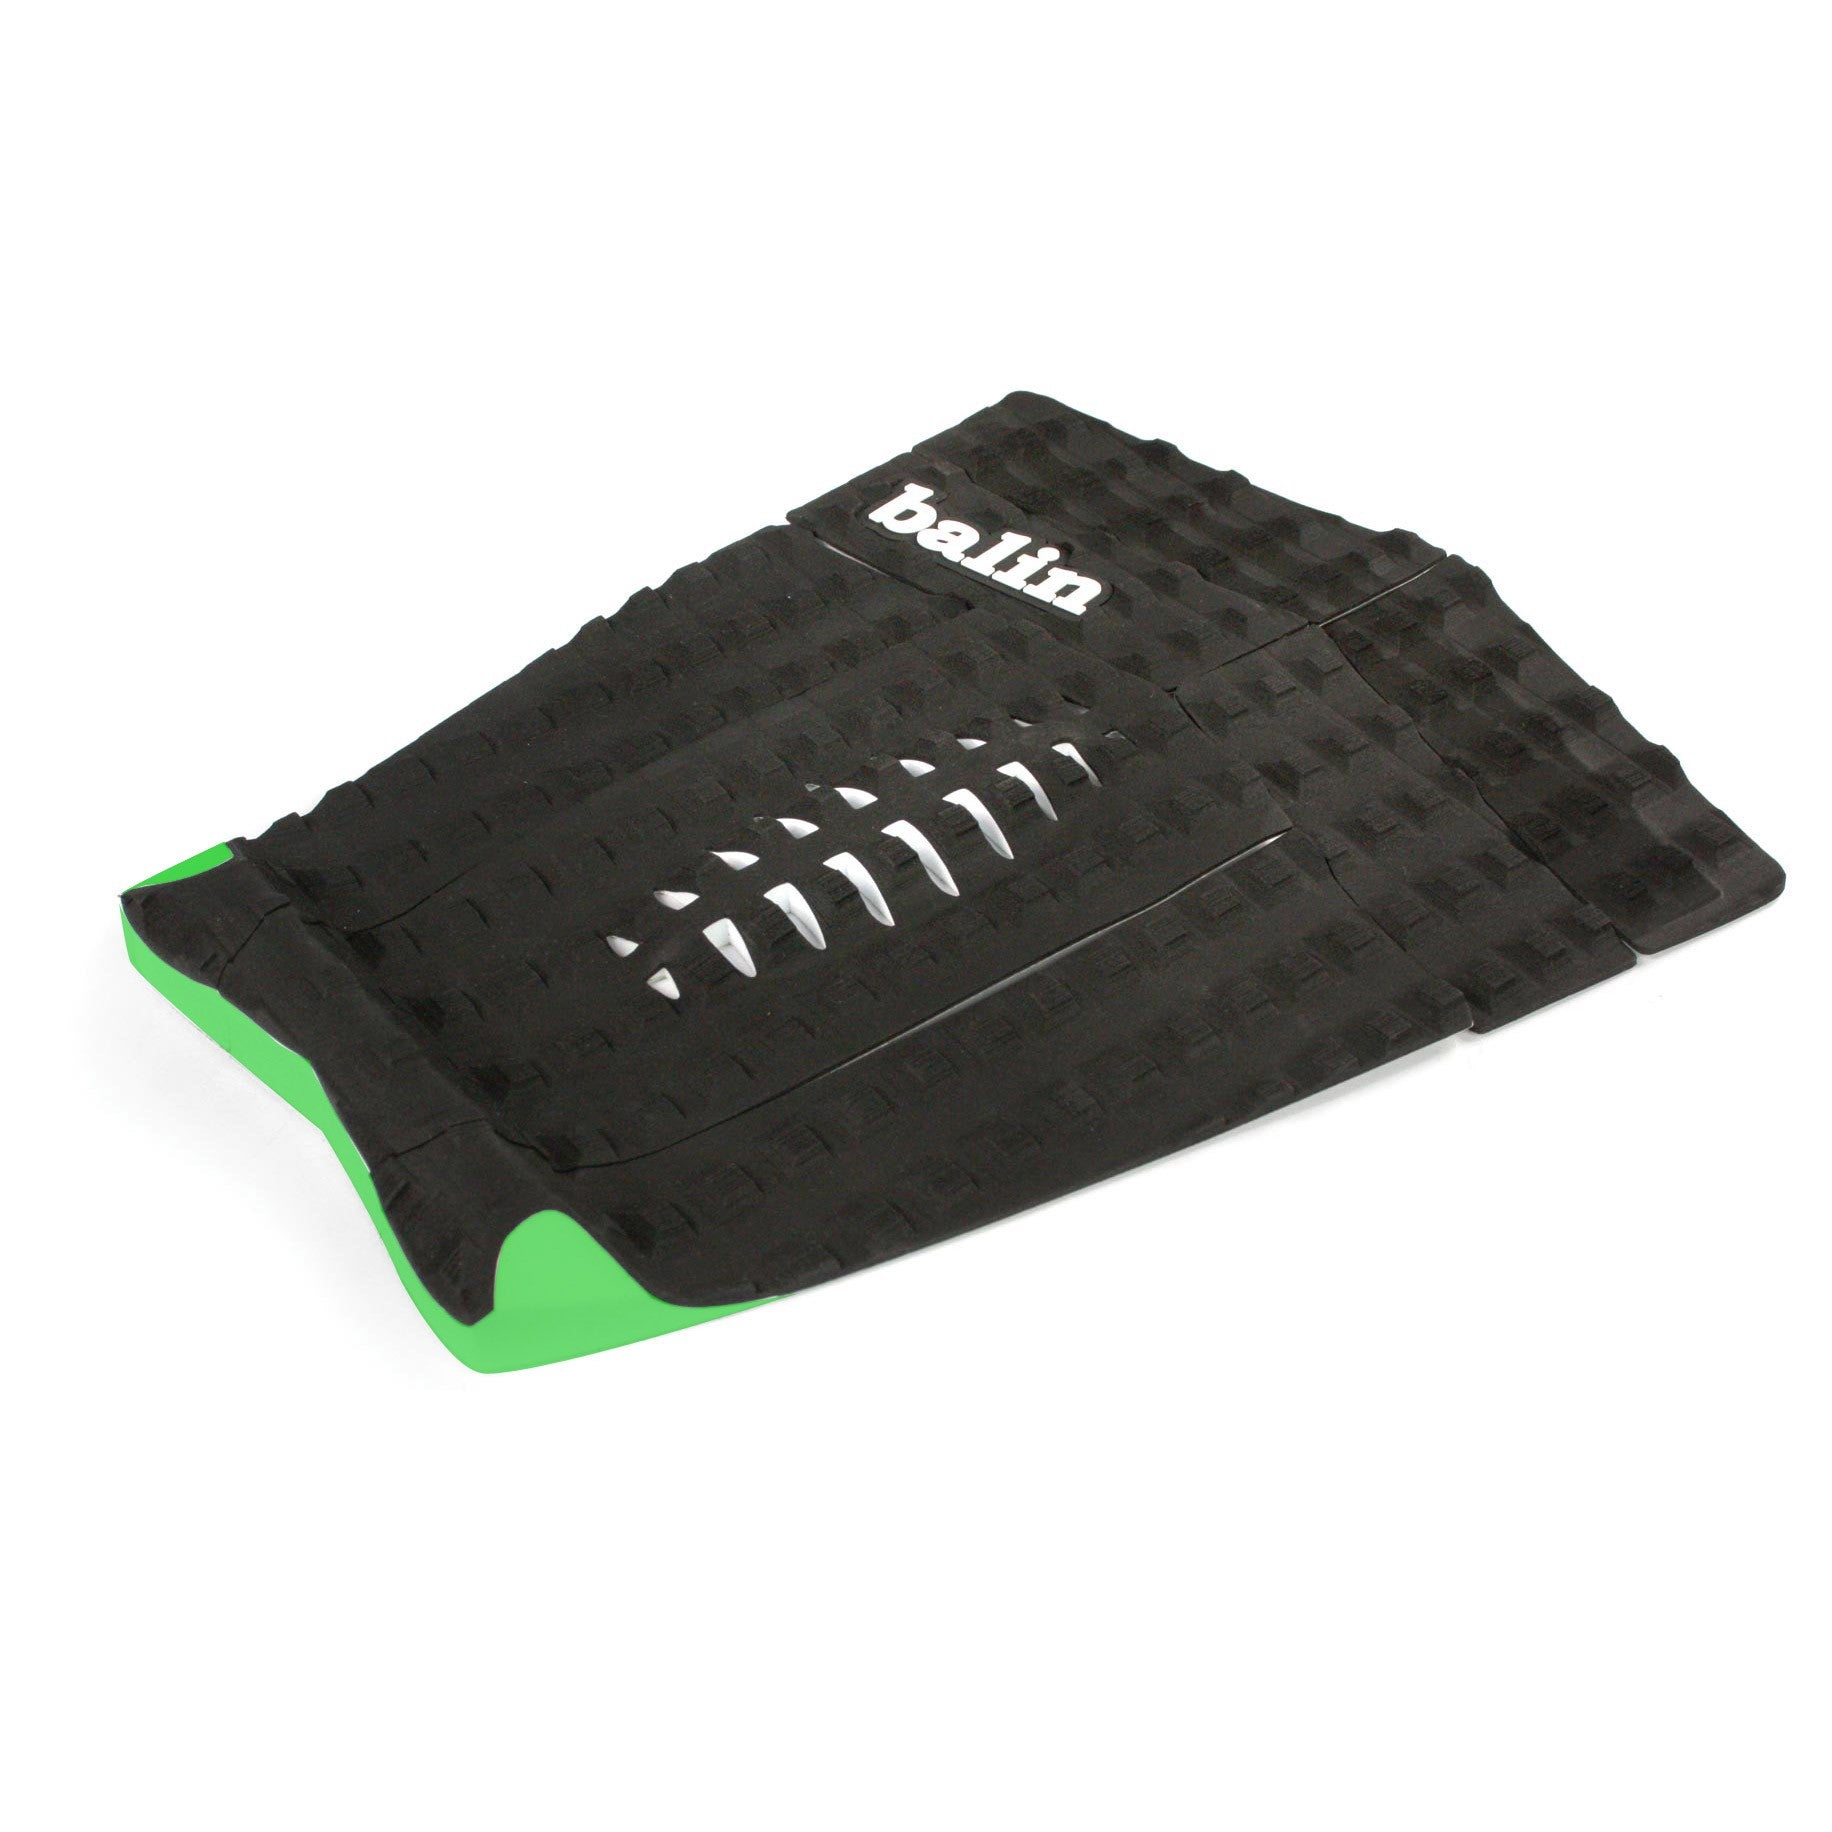 BALIN - Splitter Longboard Traction Pad - Black / Green